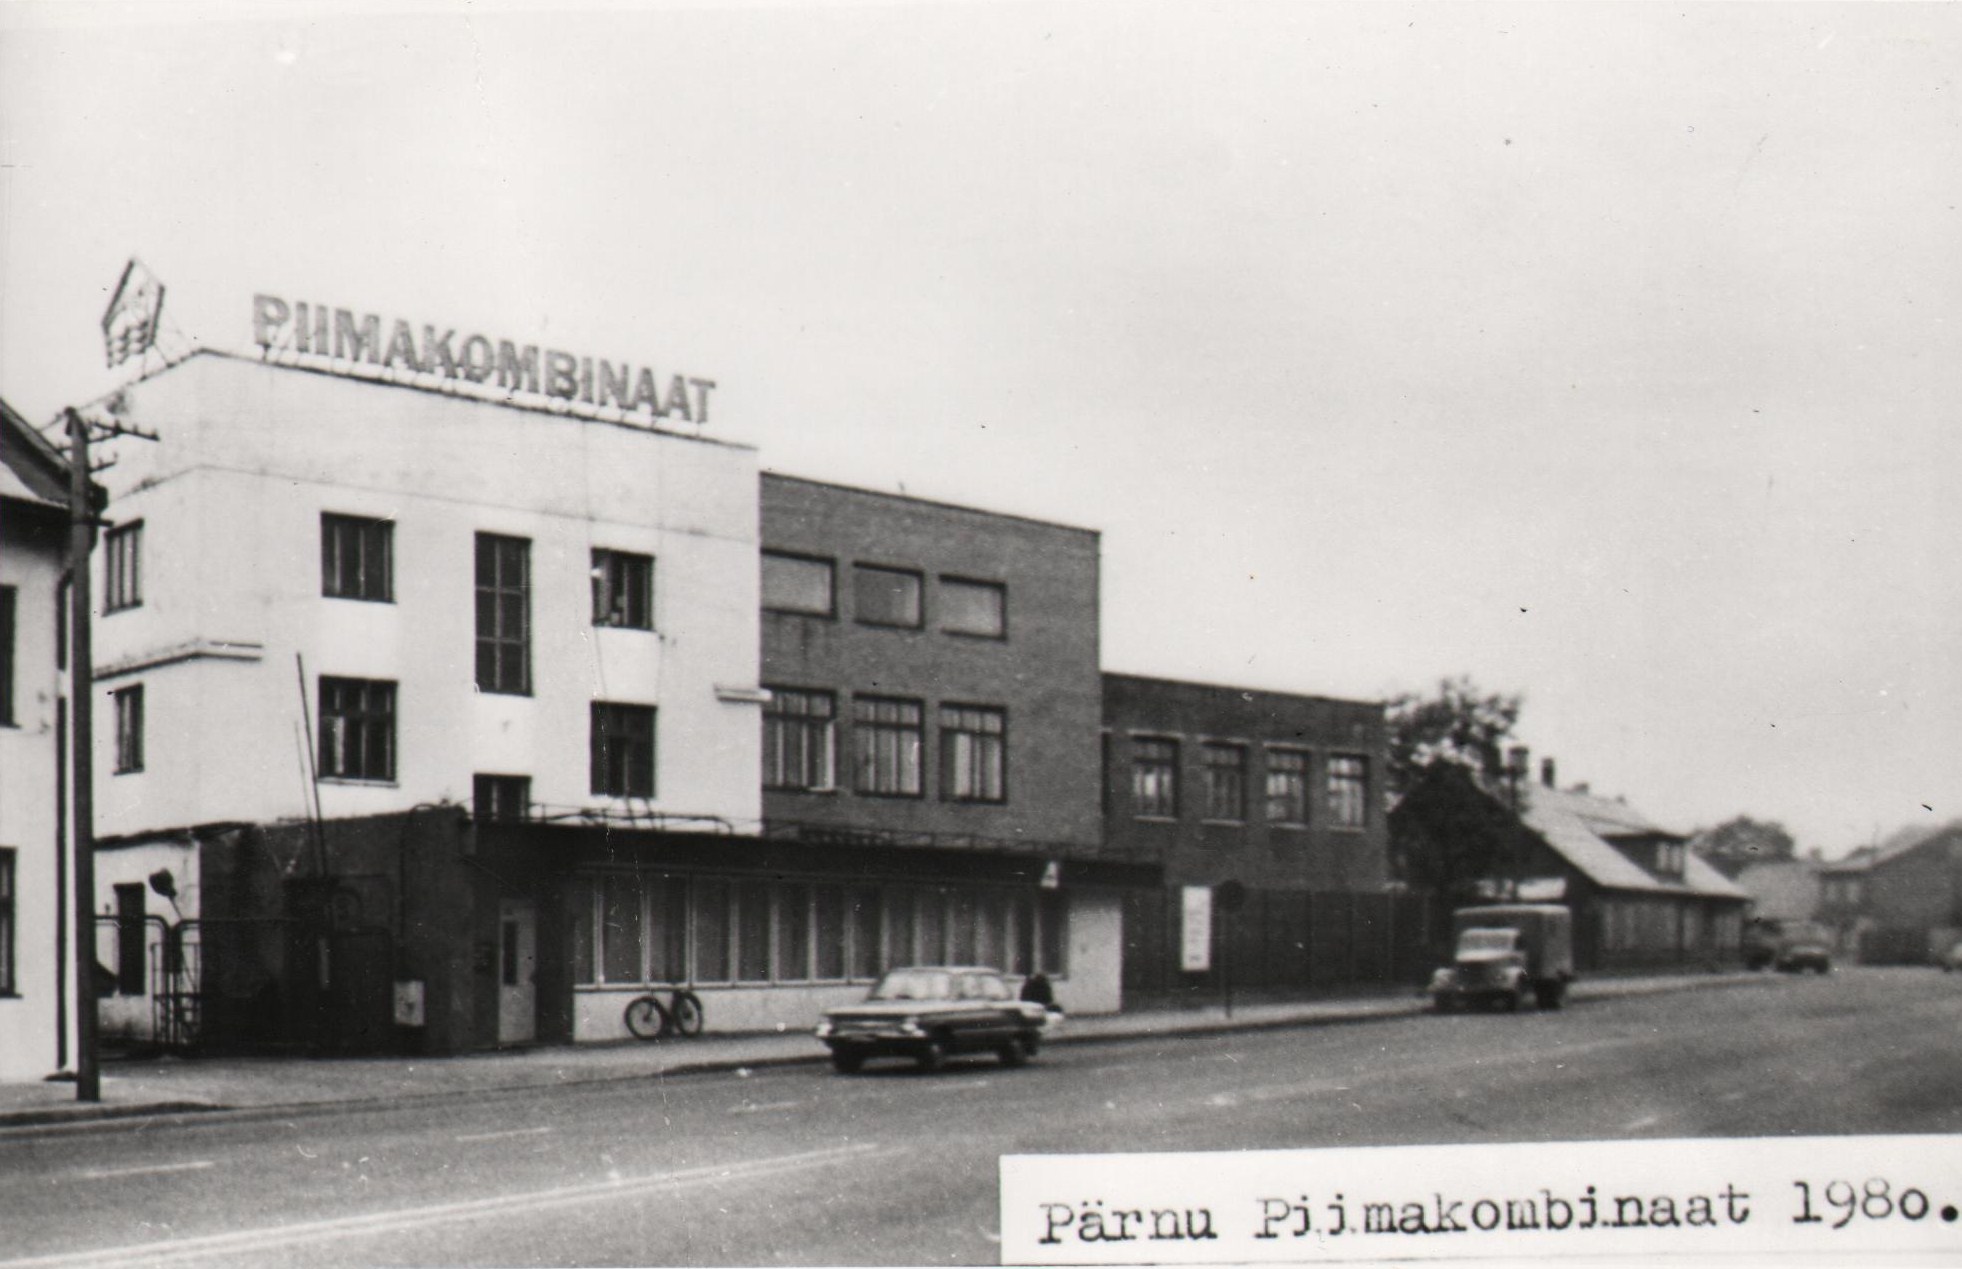 Renovated Pärnu PTK main building in 1980s.